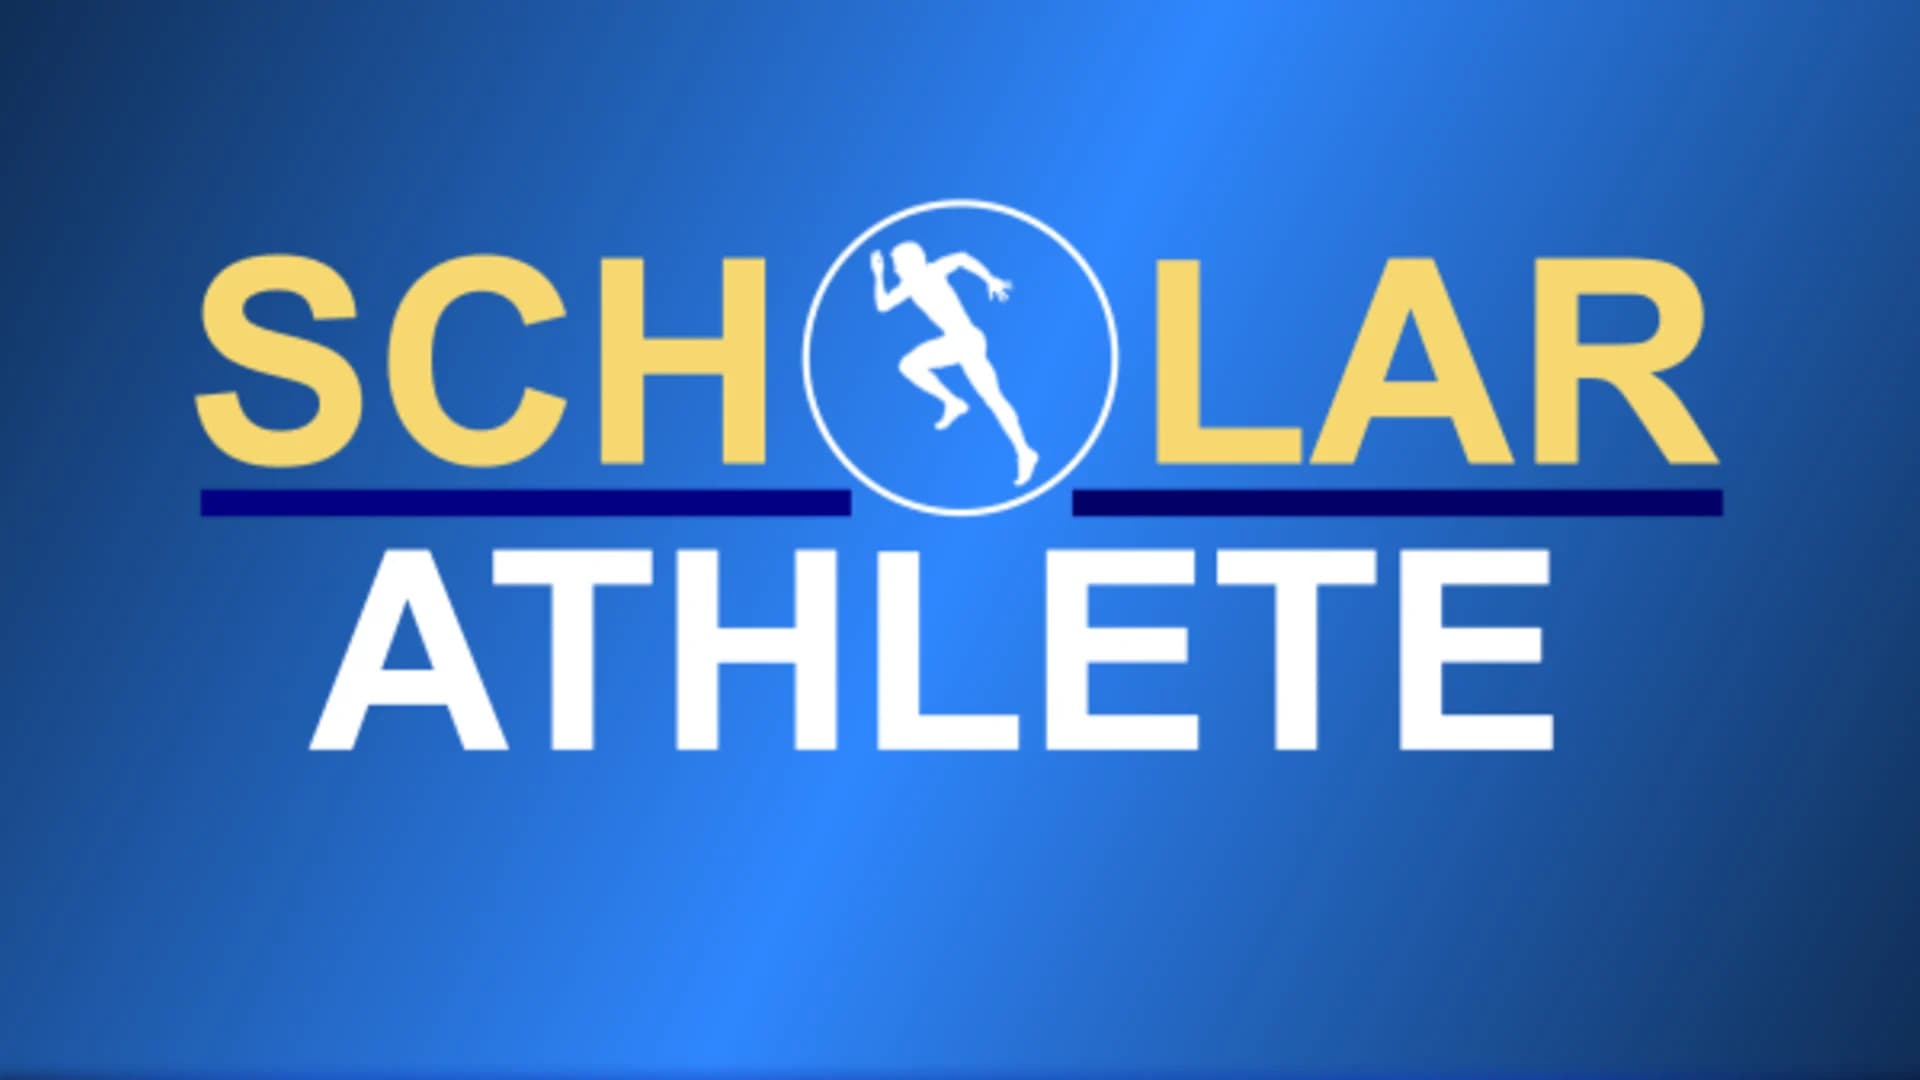 News 12 NJ & NJEA Scholar-Athlete recognition form